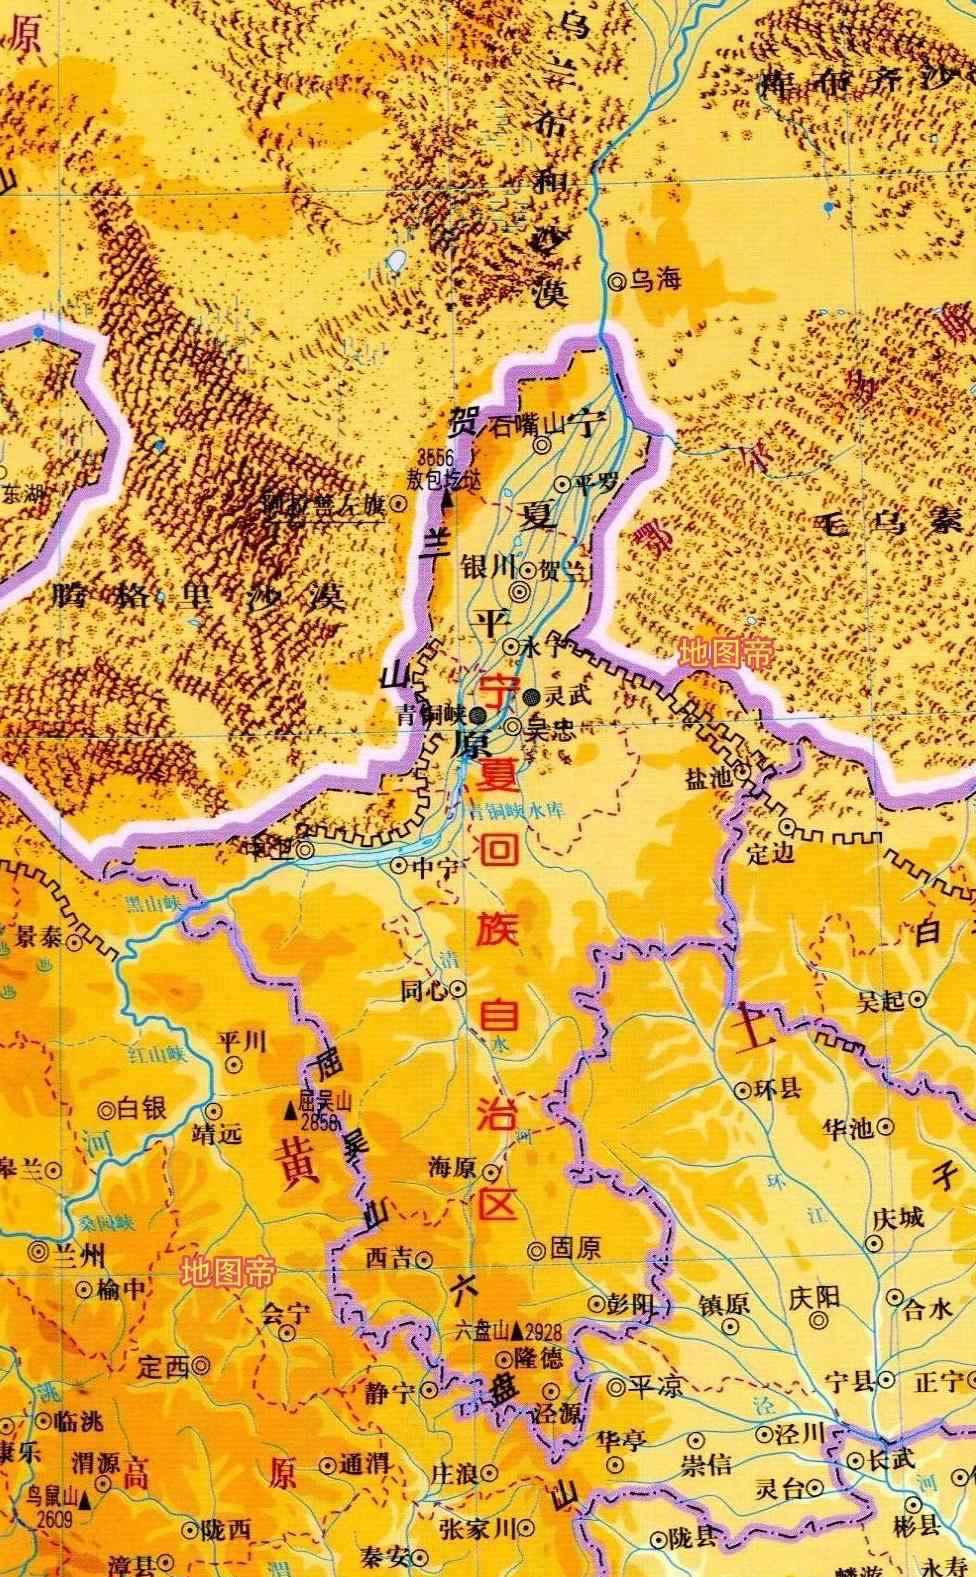 银川市地图 7张地形图，快速了解宁夏首府银川市